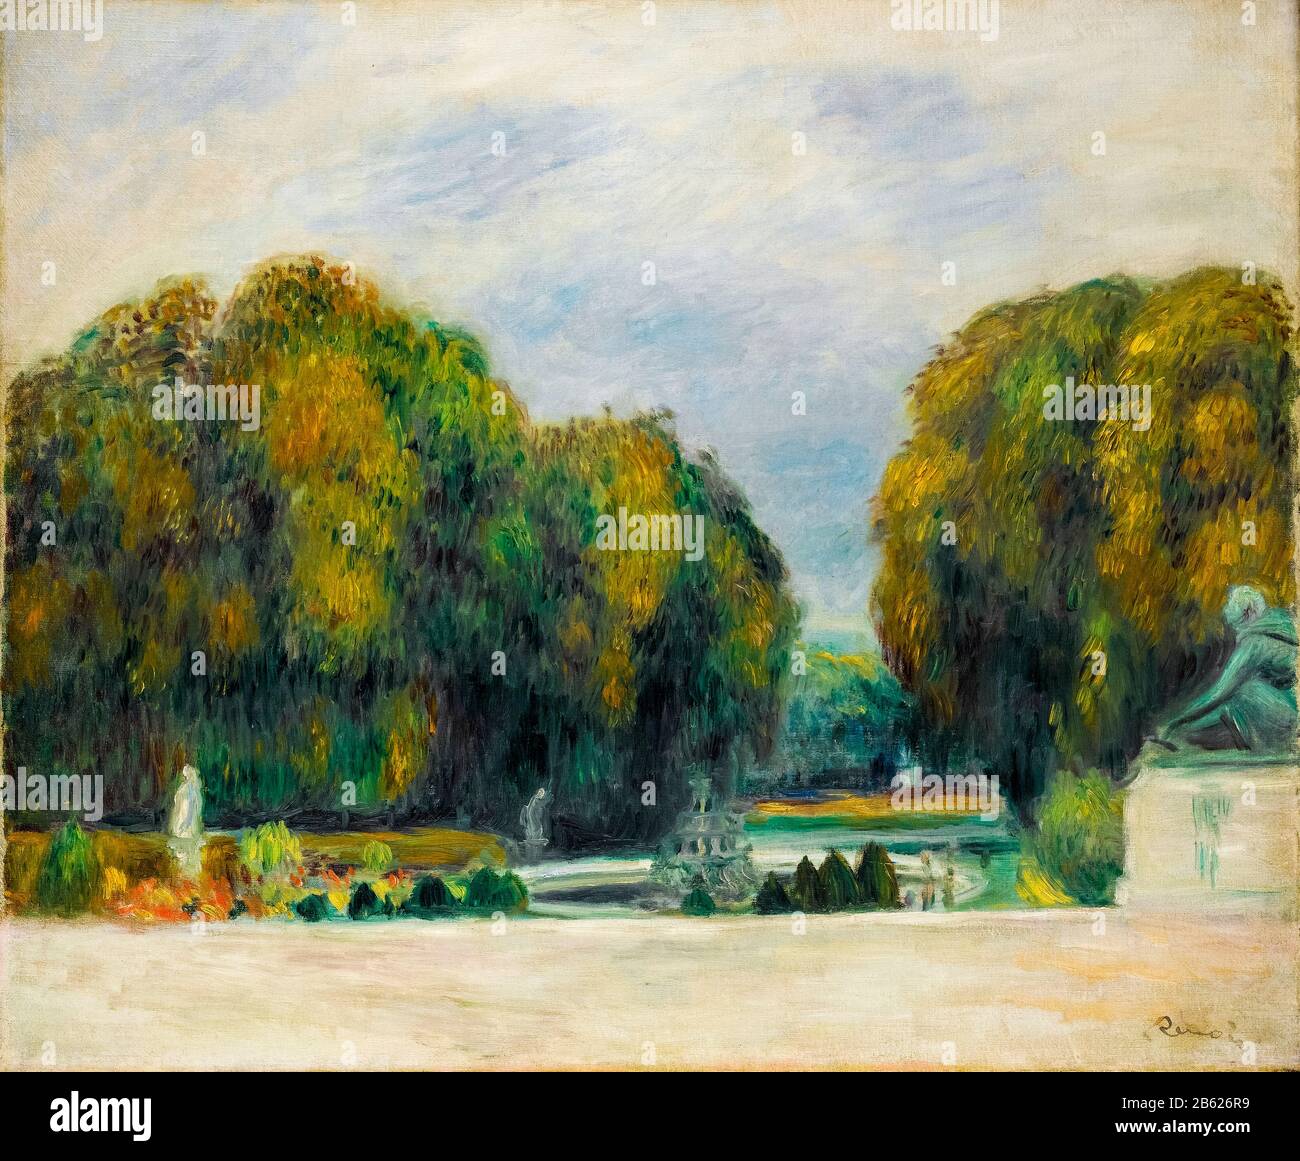 Versailles, peinture de paysage par Pierre Auguste Renoir, 1900-1905 Banque D'Images